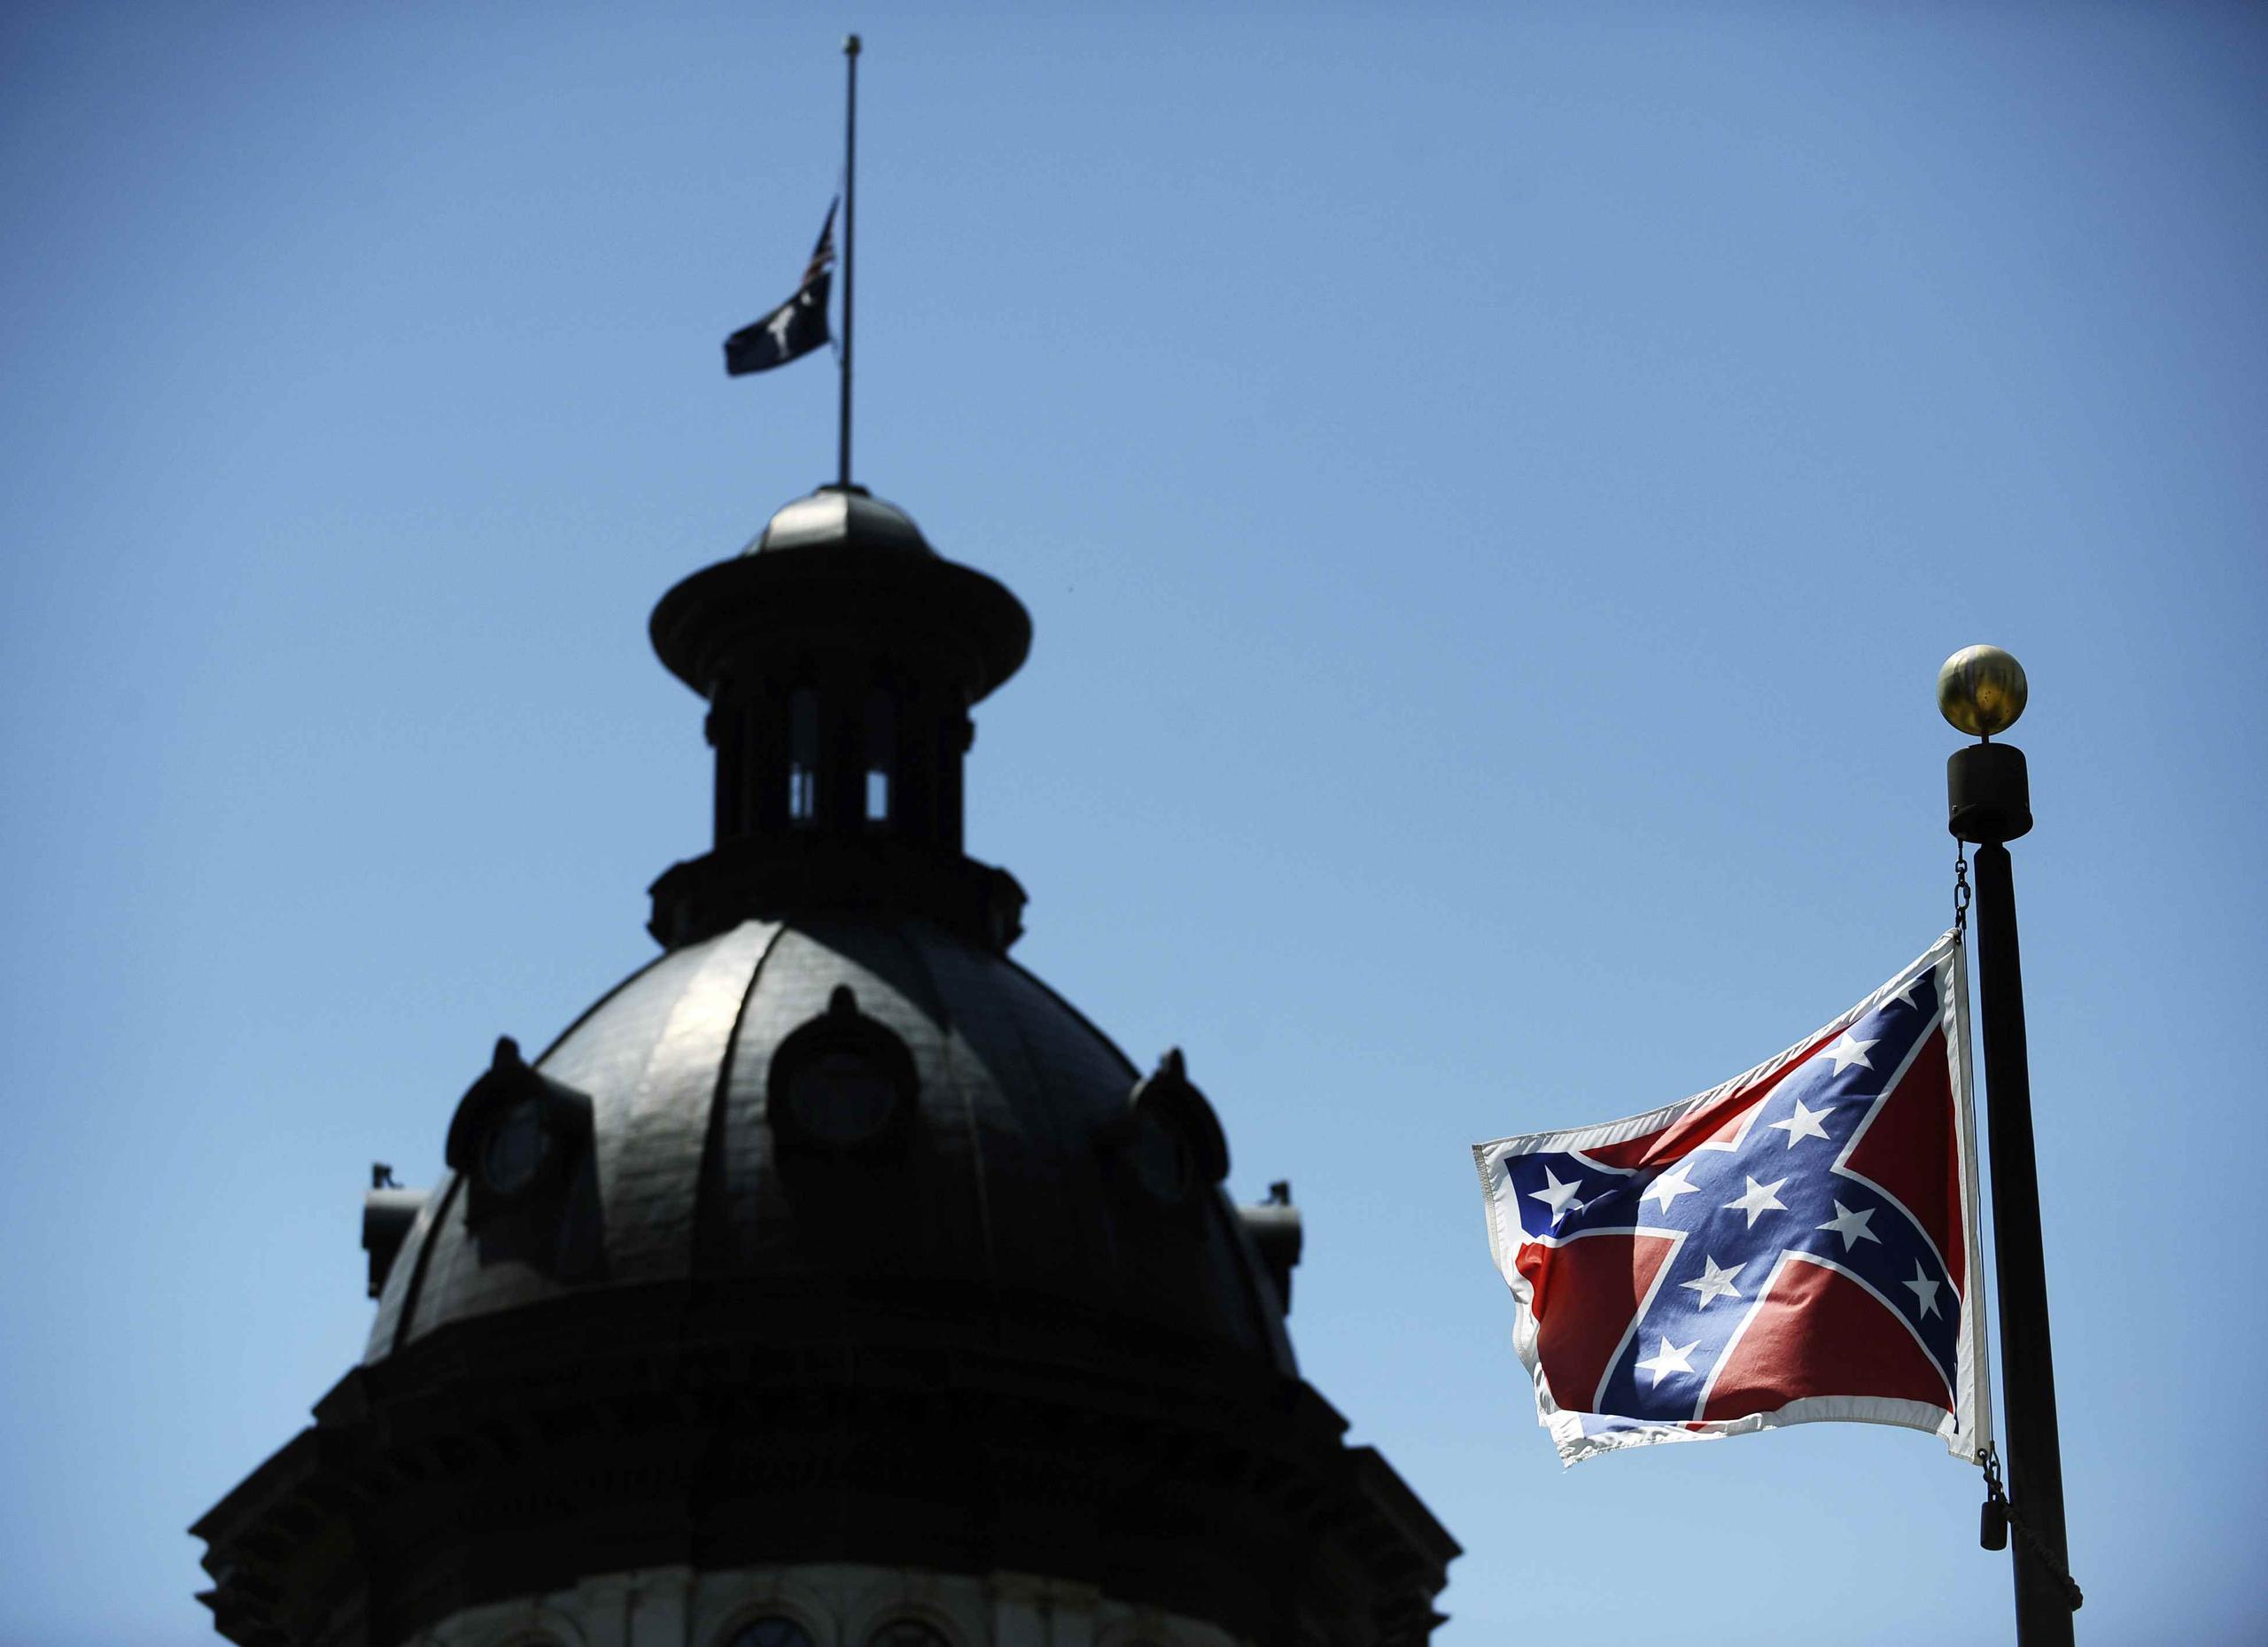 Muchos consideran la bandera confederada un símbolo de odio.